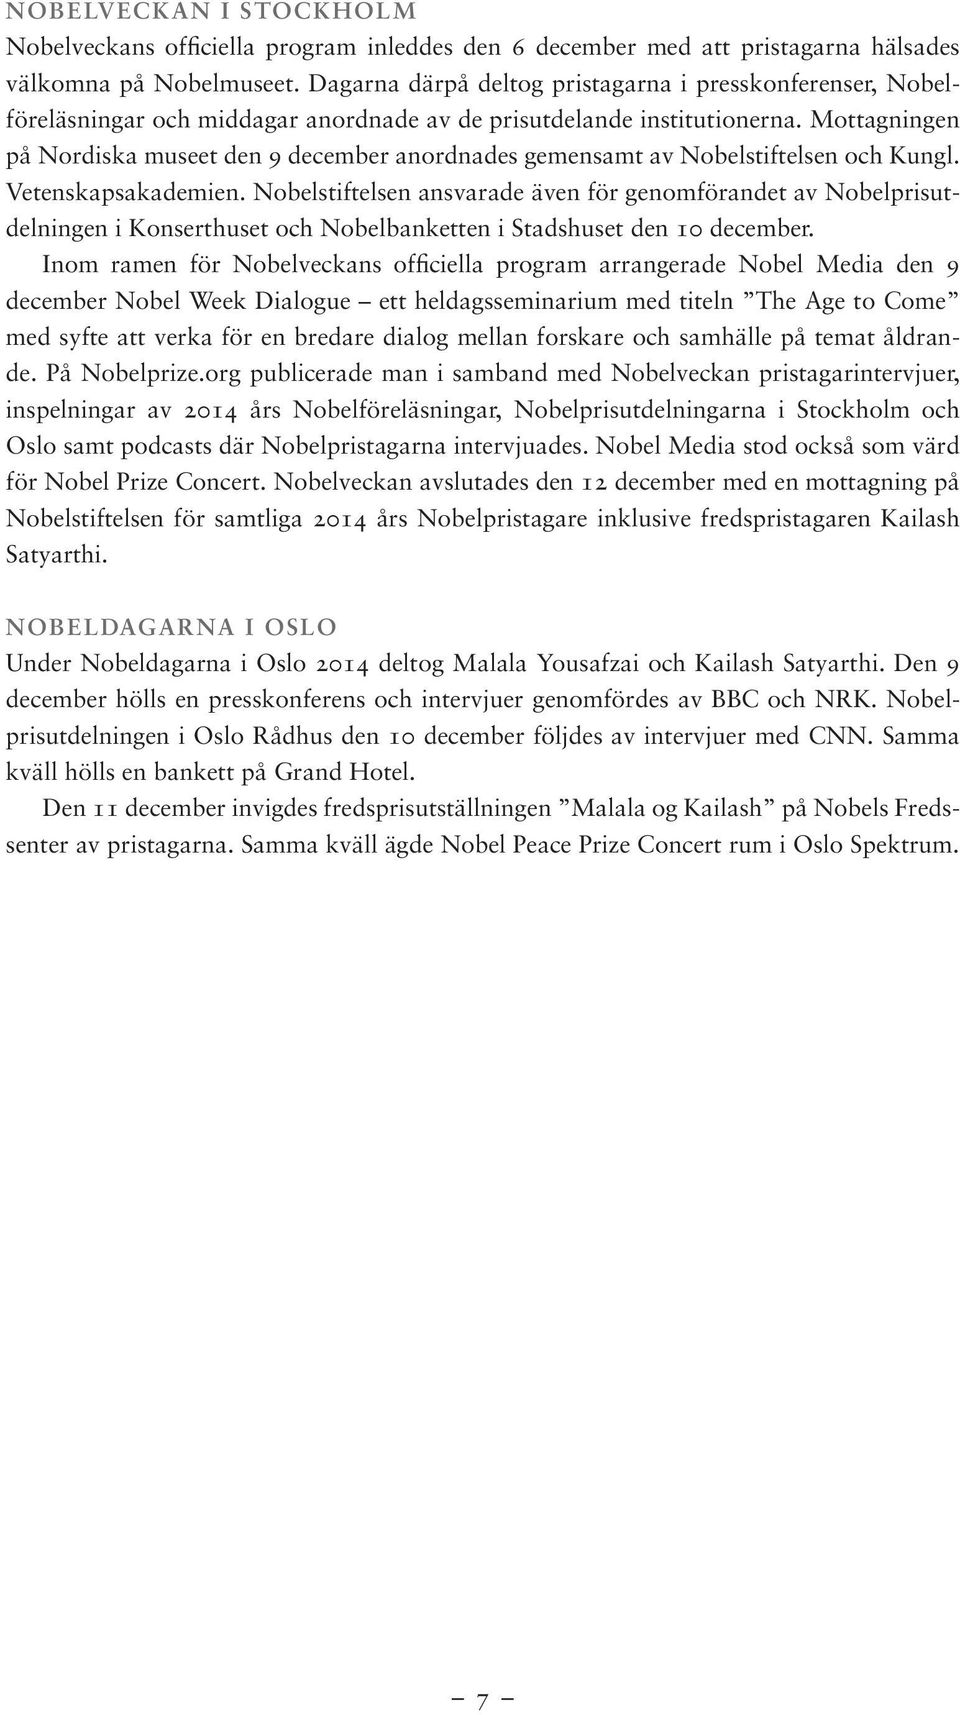 Mottagningen på Nordiska museet den 9 december anordnades gemensamt av Nobelstiftelsen och Kungl. Vetenskapsakademien.